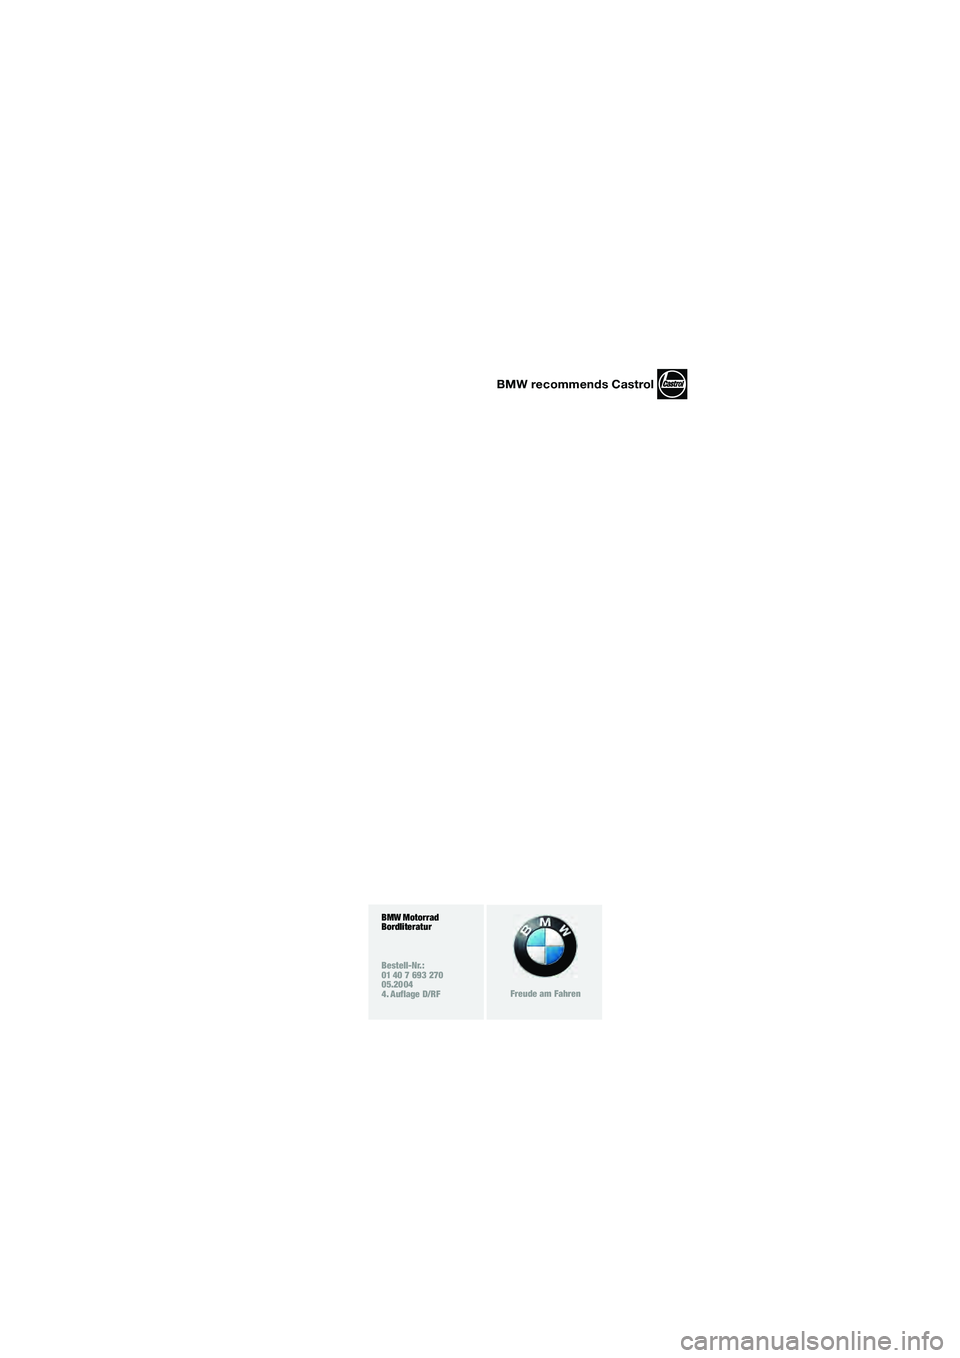 BMW MOTORRAD R 850 R 2004  Betriebsanleitung (in German) BMW Motorrad
Bordliteratur
Bestell-Nr.:
01 40 7 693 270
05.2004
4. Auflage D/RF
Freude am Fahren
BMW recommends Castrol
10r28bkd3.book  Seite 92  Dienstag, 25. Mai 2004  4:42 16 